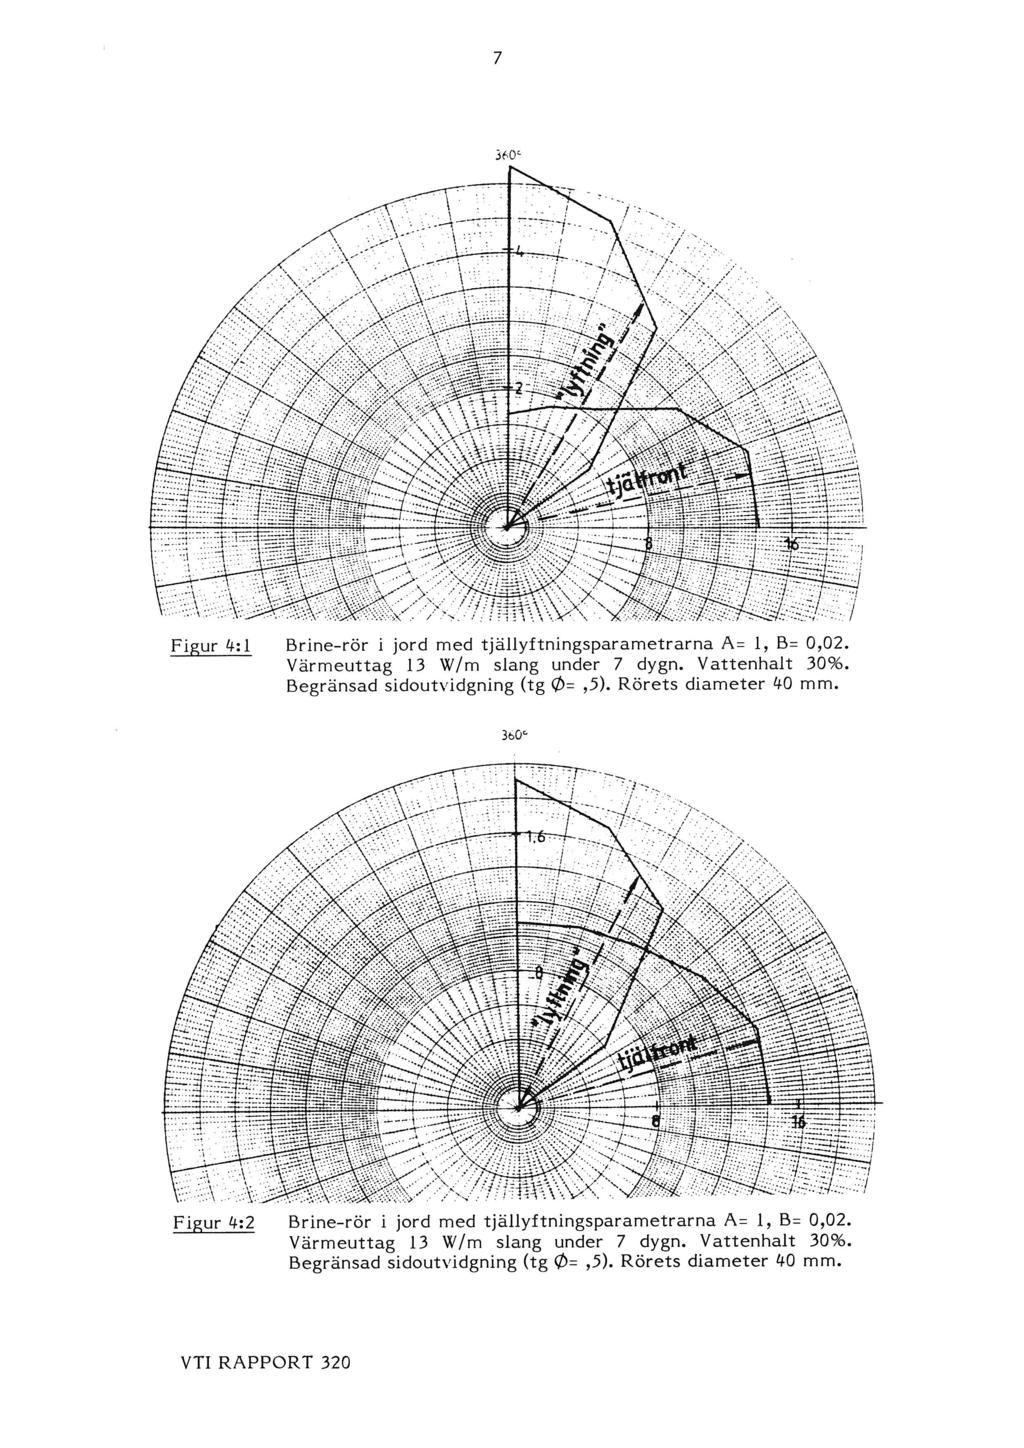 Figur 4:1 Brine-rör i jord med tjällyftningsparametrarna A: 1, B: 0,02. Värmeuttag 13 W/m slang under 7 dygn. Vattenhalt 30%. Begränsad sidoutvidgning (tg (D:,5). Rörets diameter 40 mm.